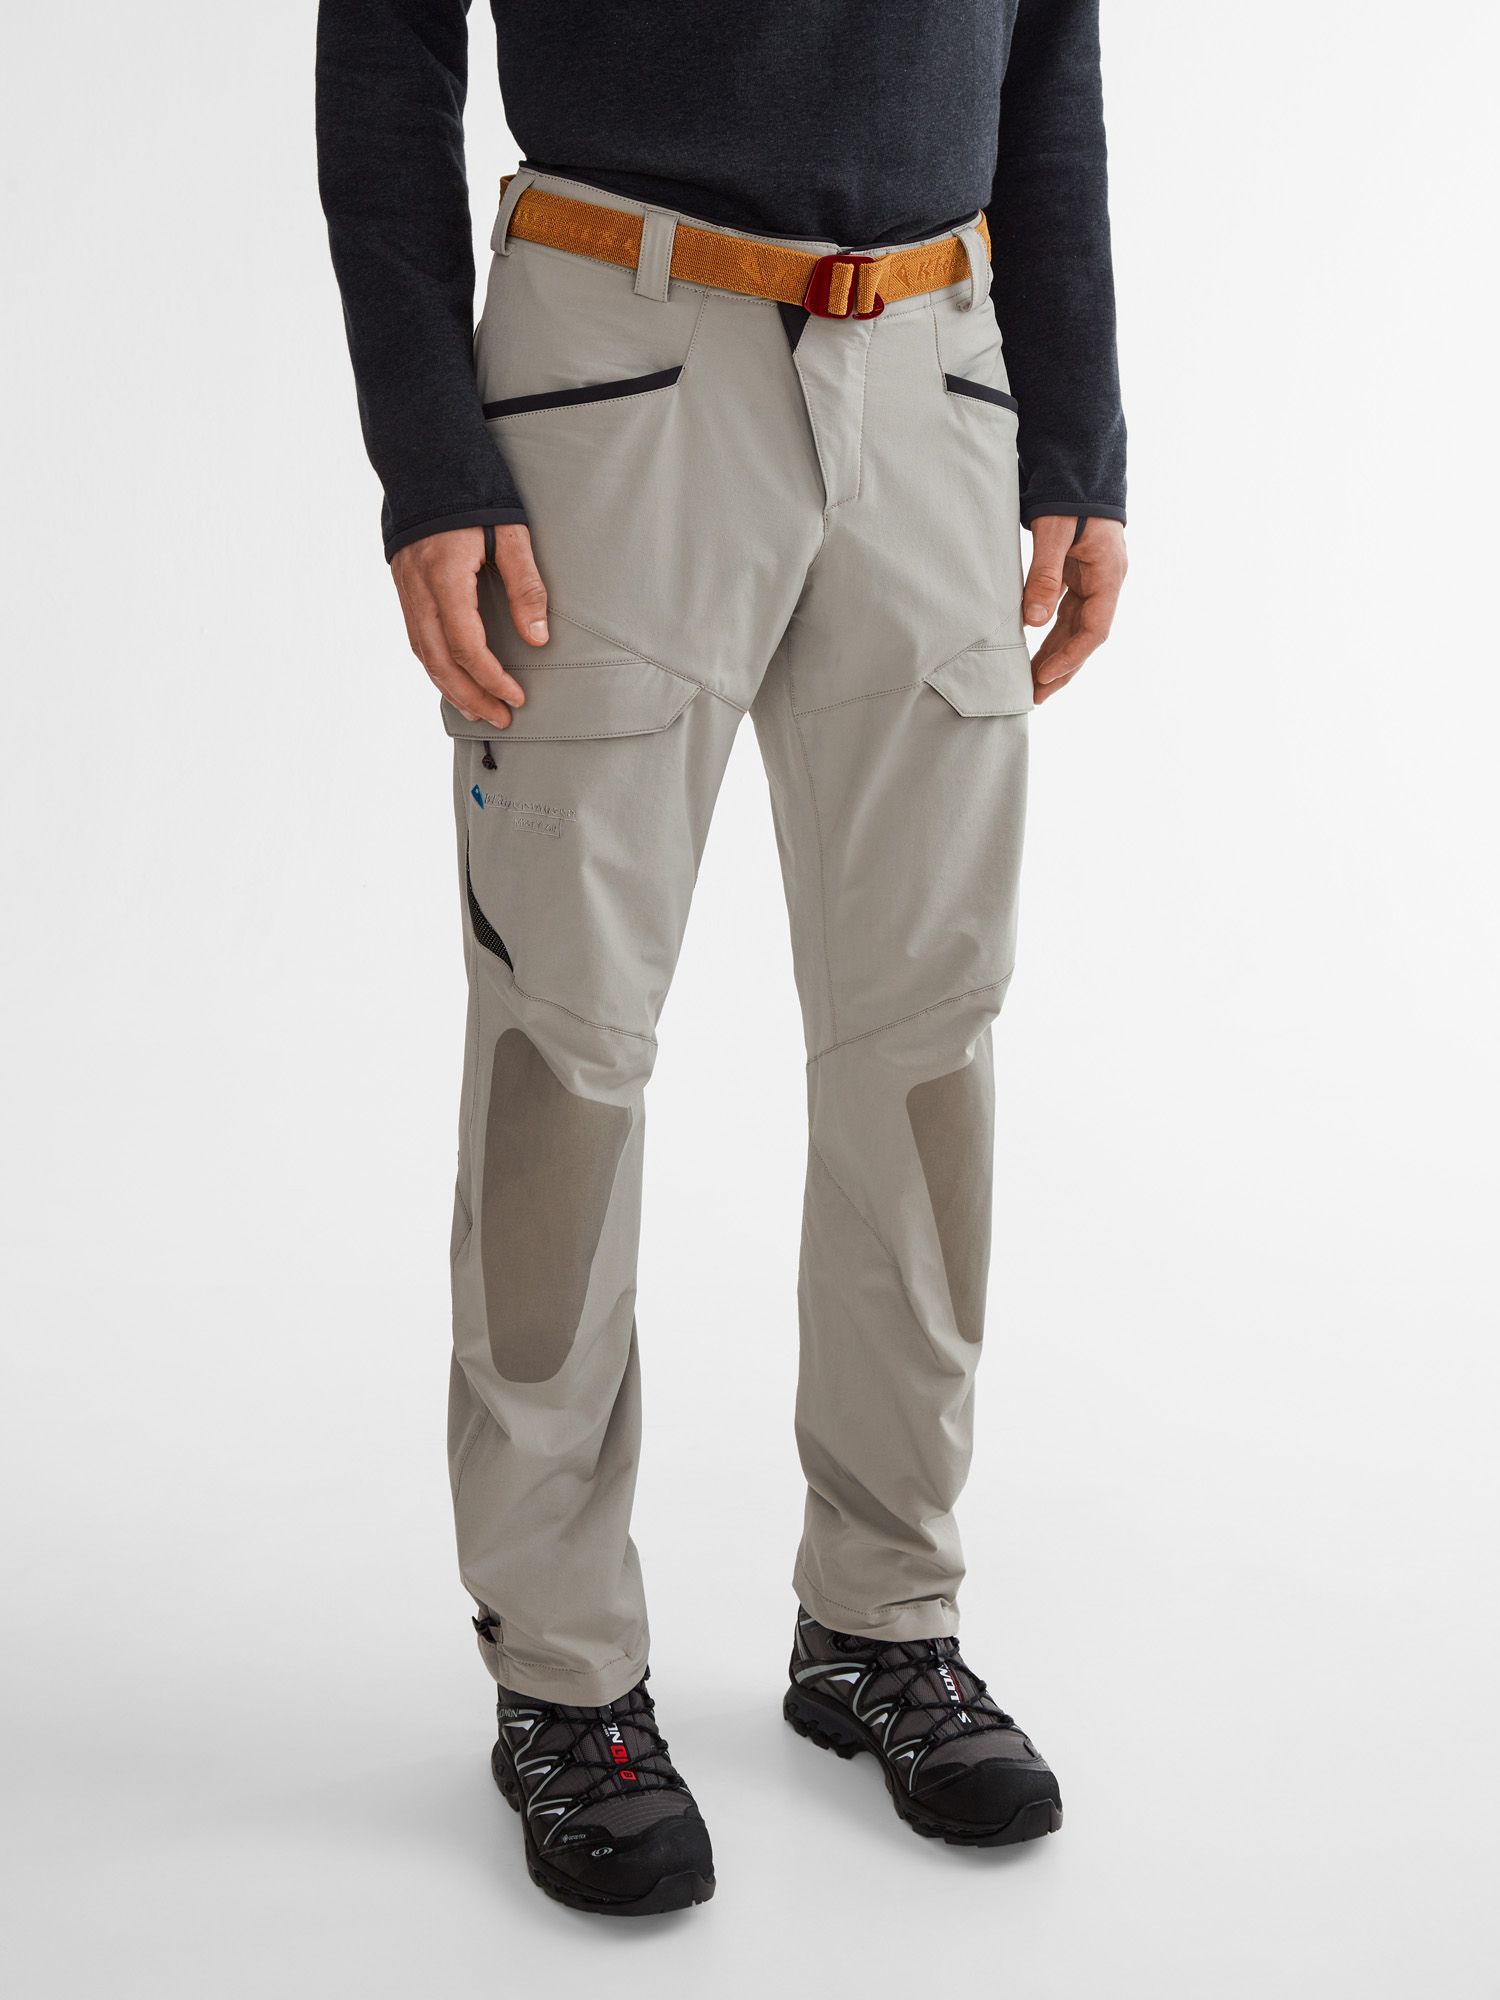 Men's Pants | Mountaineering & hiking pants - Klättermusen